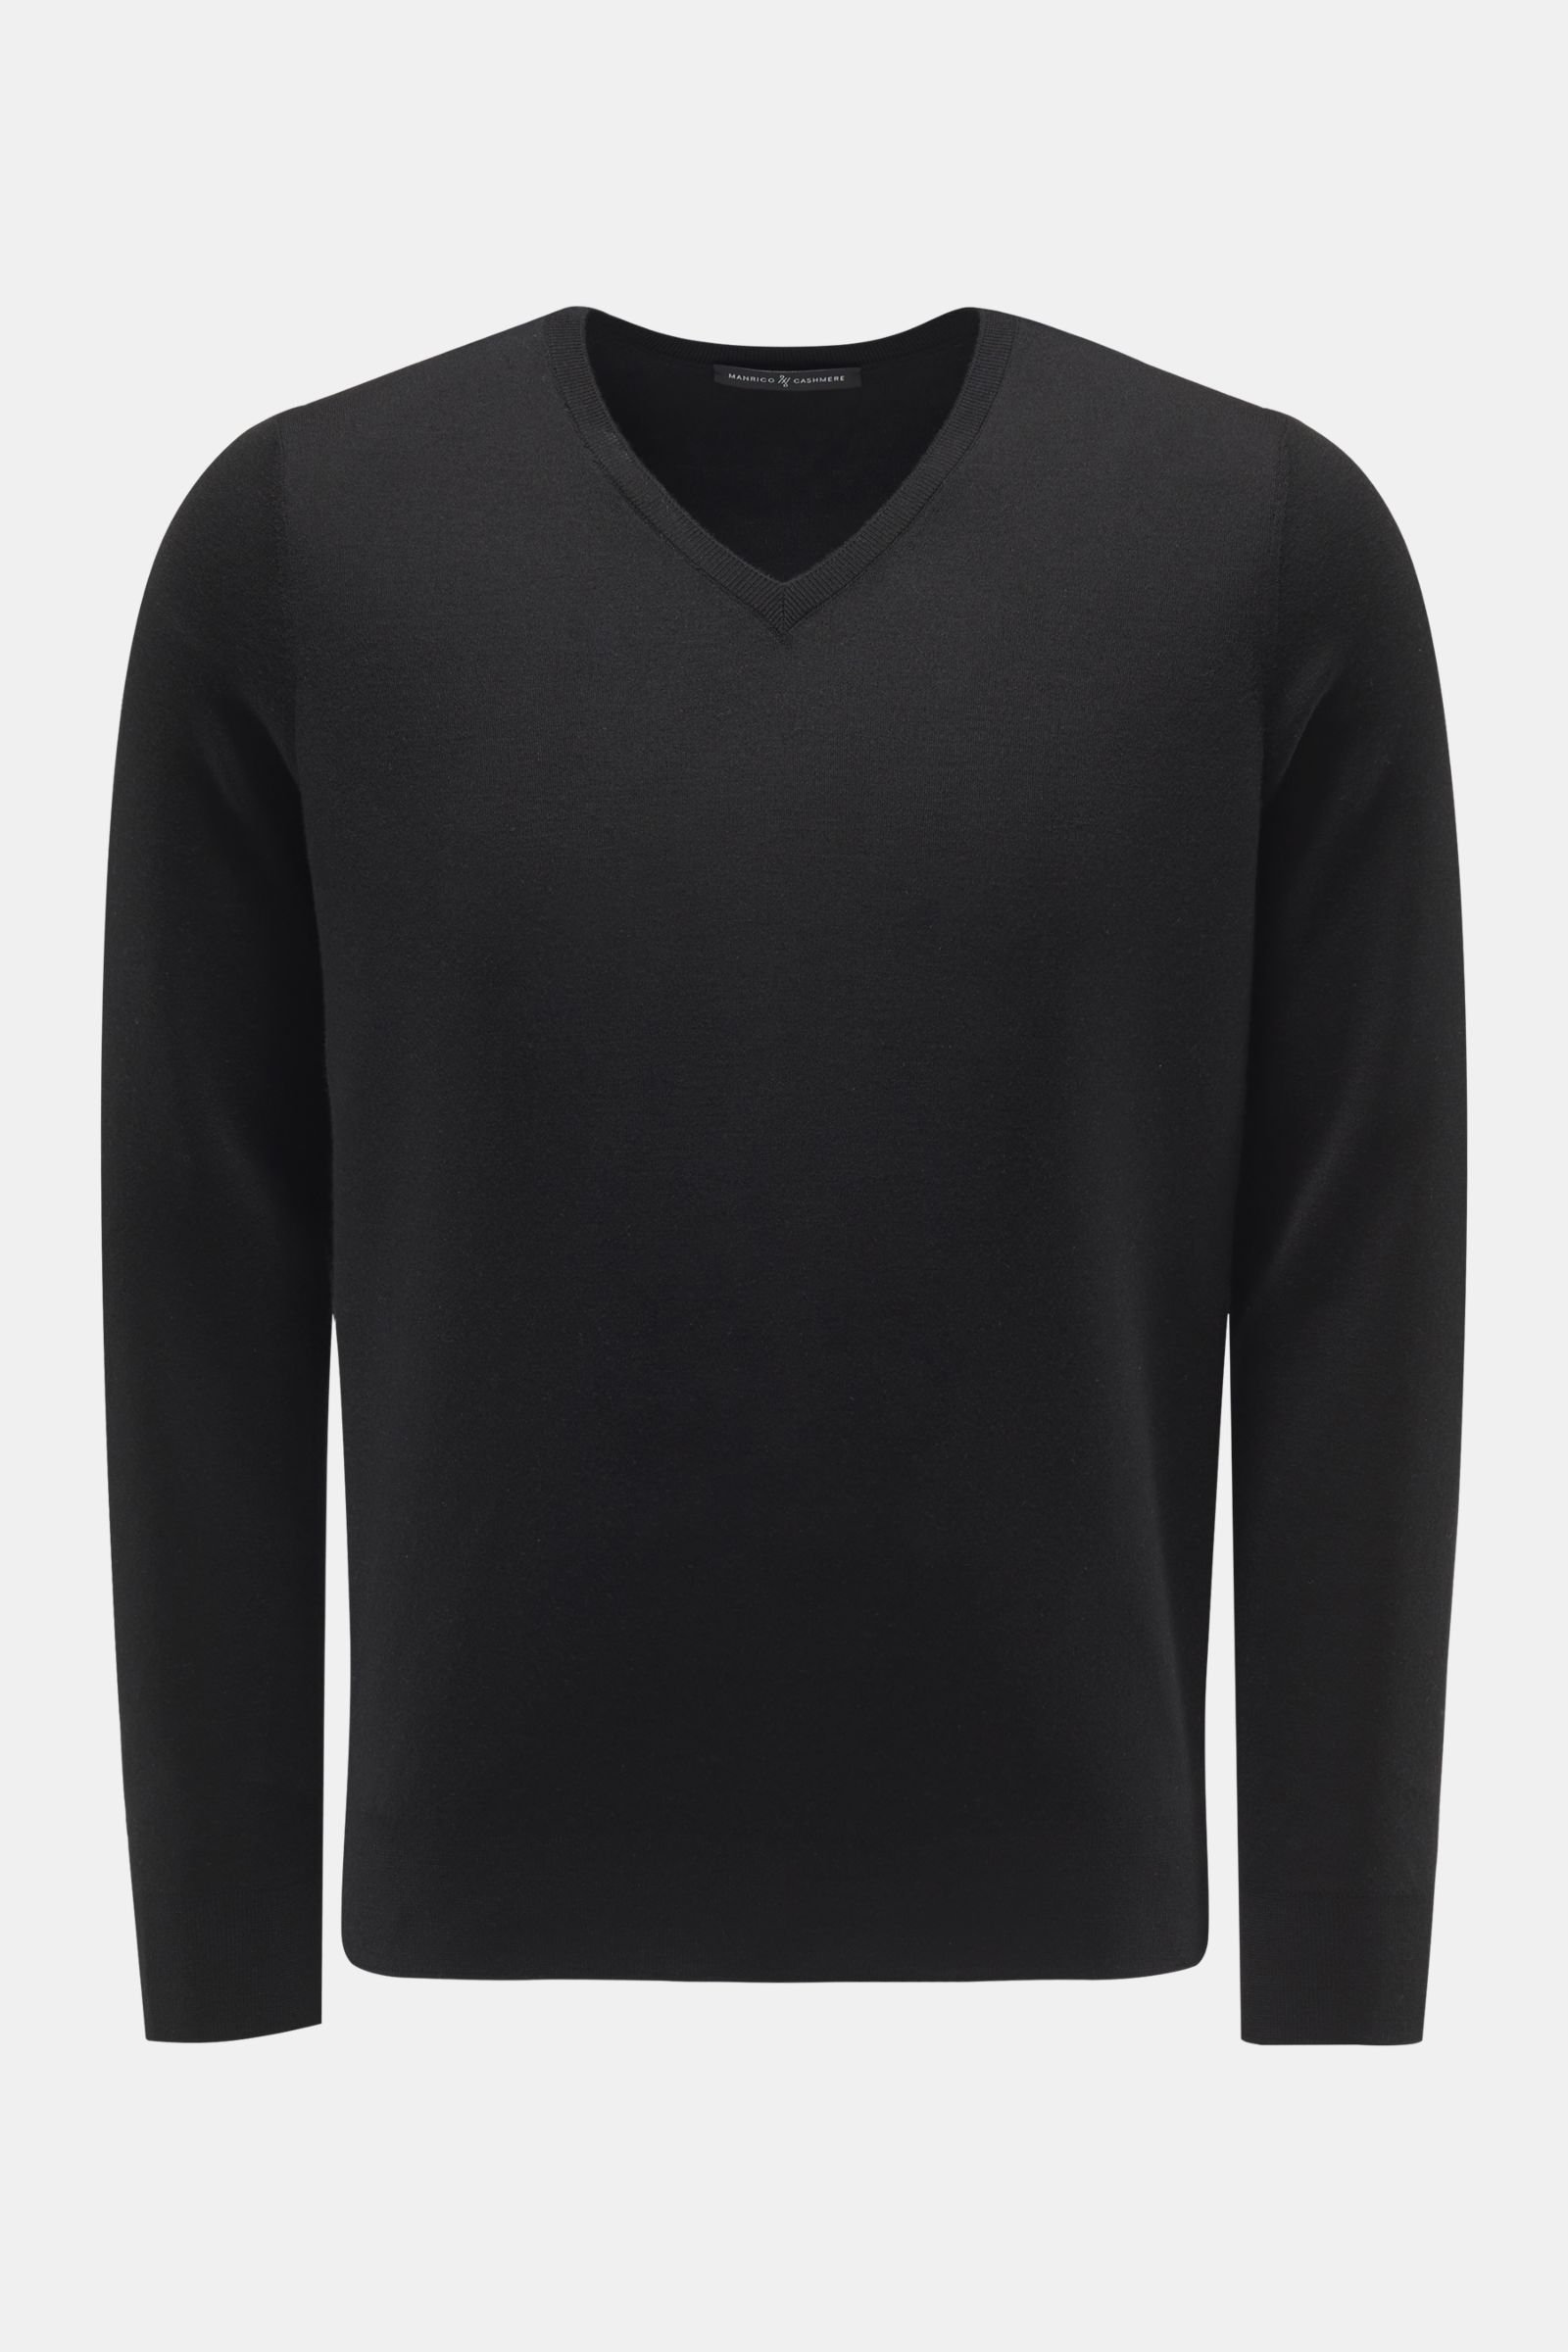 Cashmere Feinstrick-Pullover schwarz